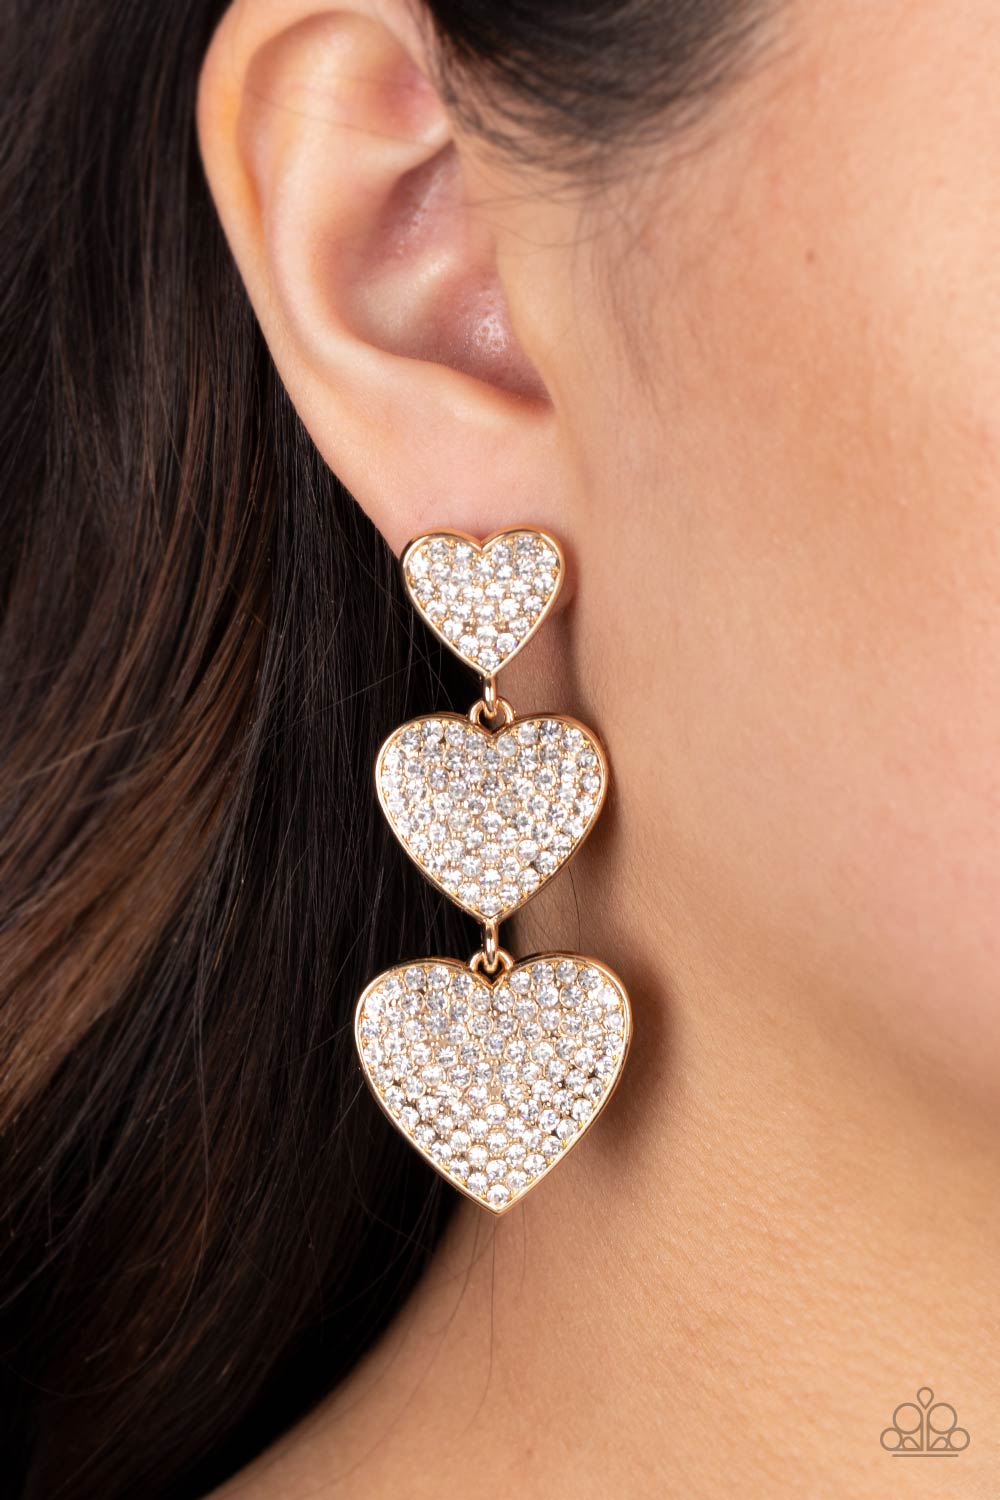  Couples Retreat Gold Earrings - Jewelry by Bretta